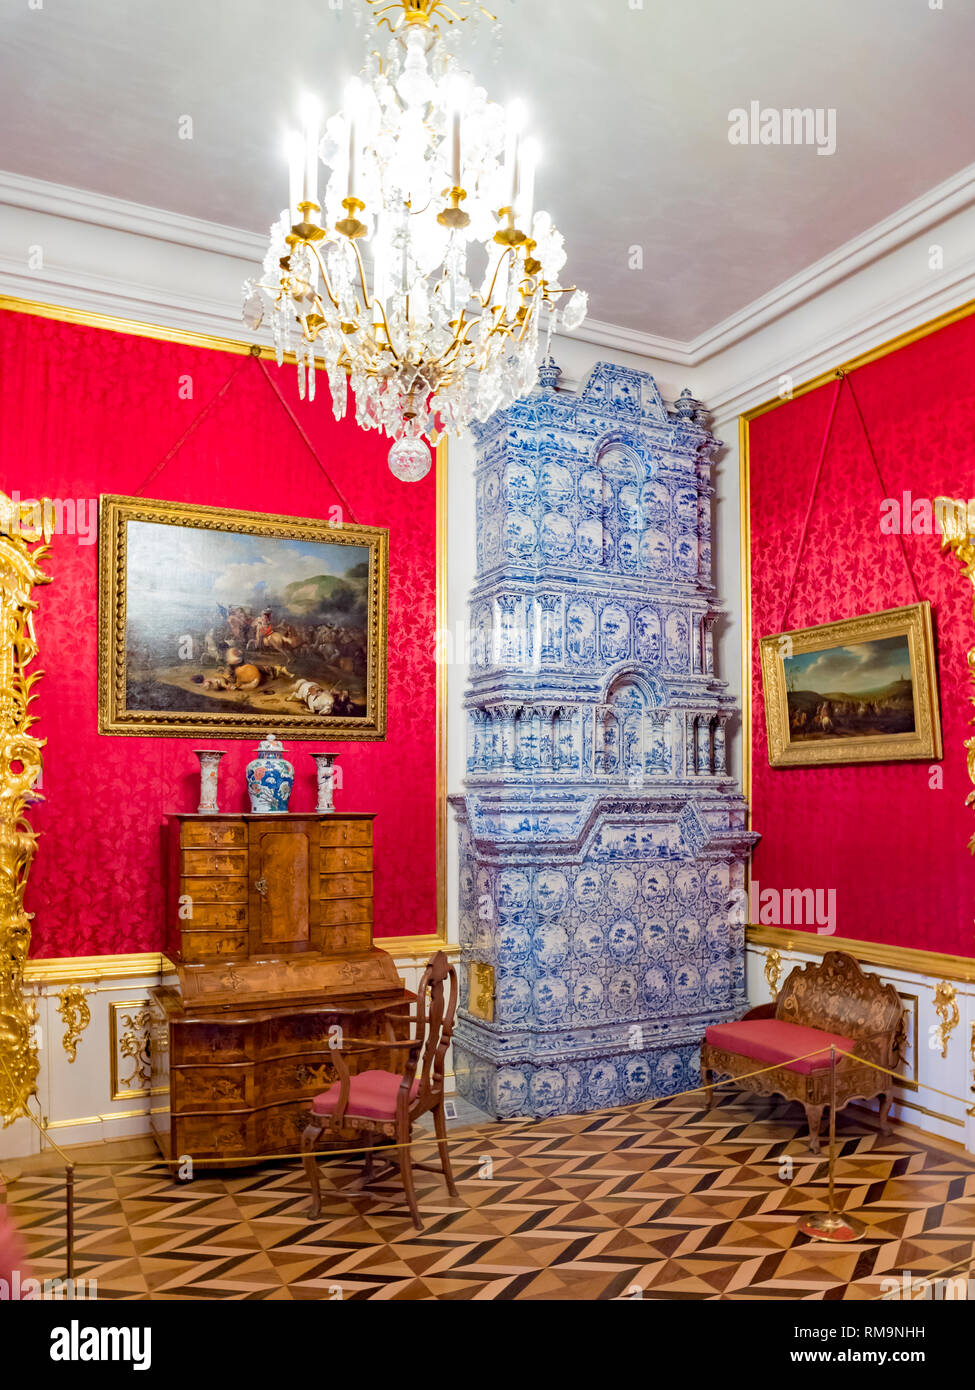 18 Settembre 2018: San Pietroburgo, Russia - in camera il Peterhof Grand Palace con una ceramica stufa in maiolica. Foto Stock